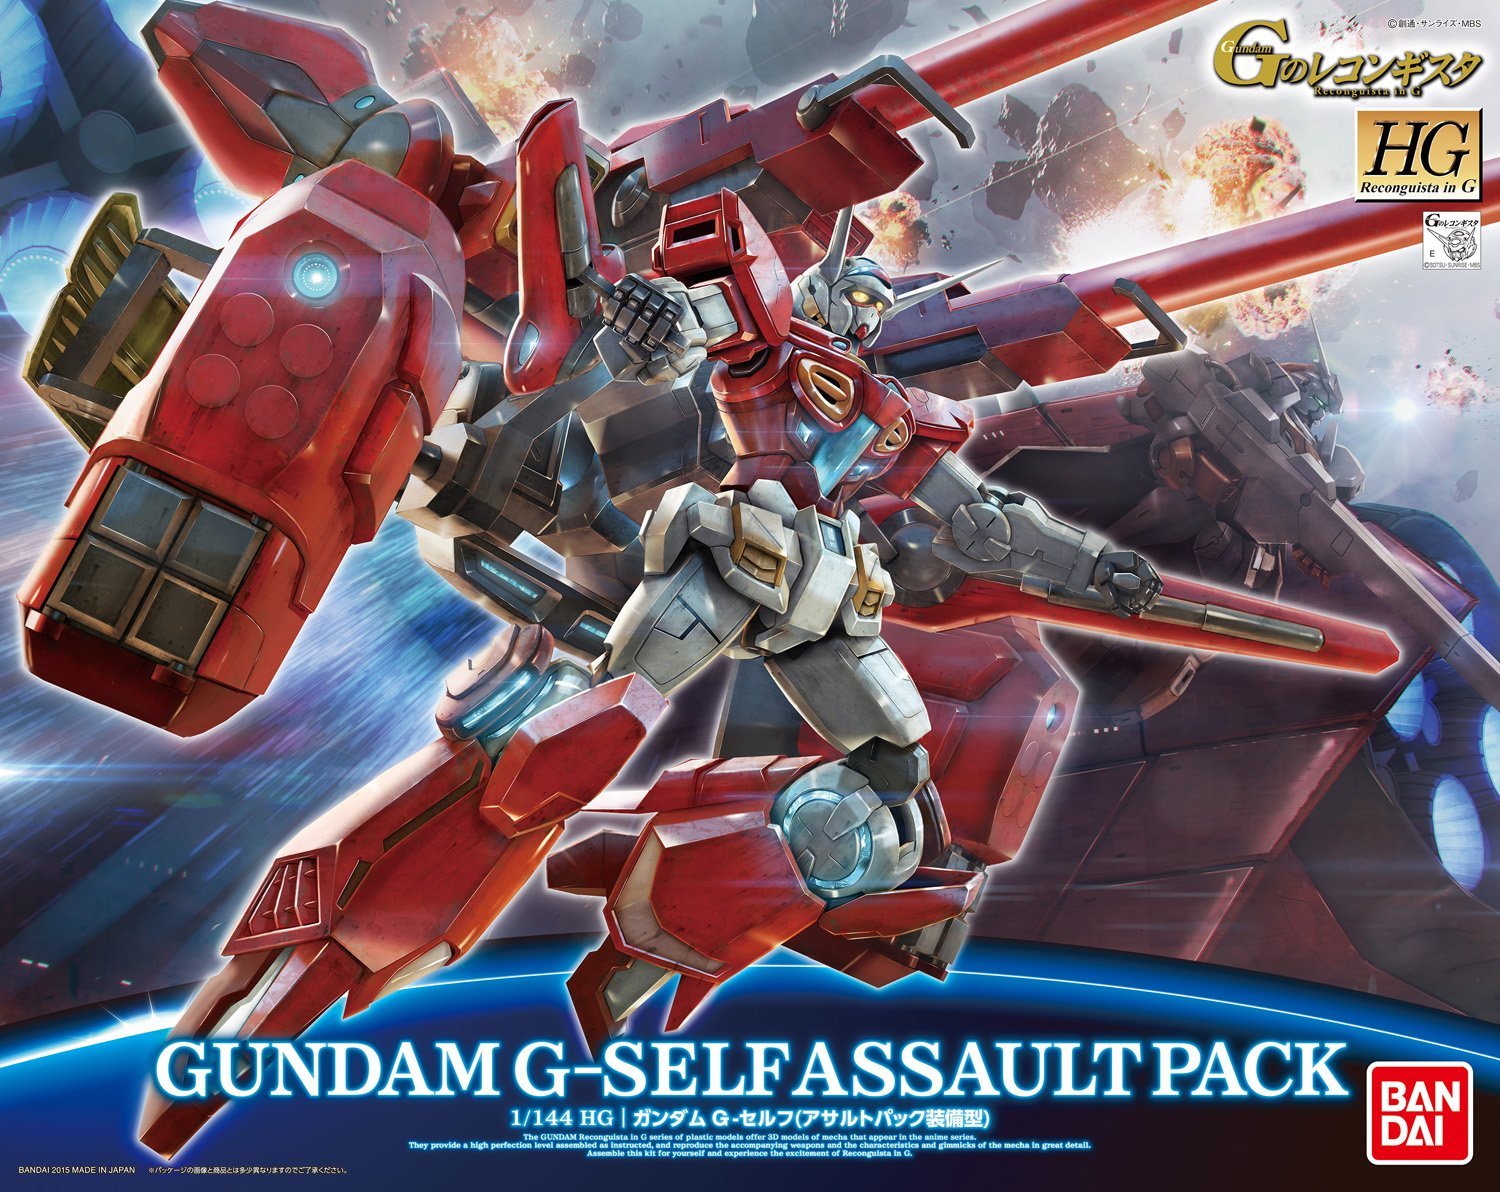 Gundam 1/144 HG Reconguista G #12 Gundam G-Self with Assault Pack Model Kit